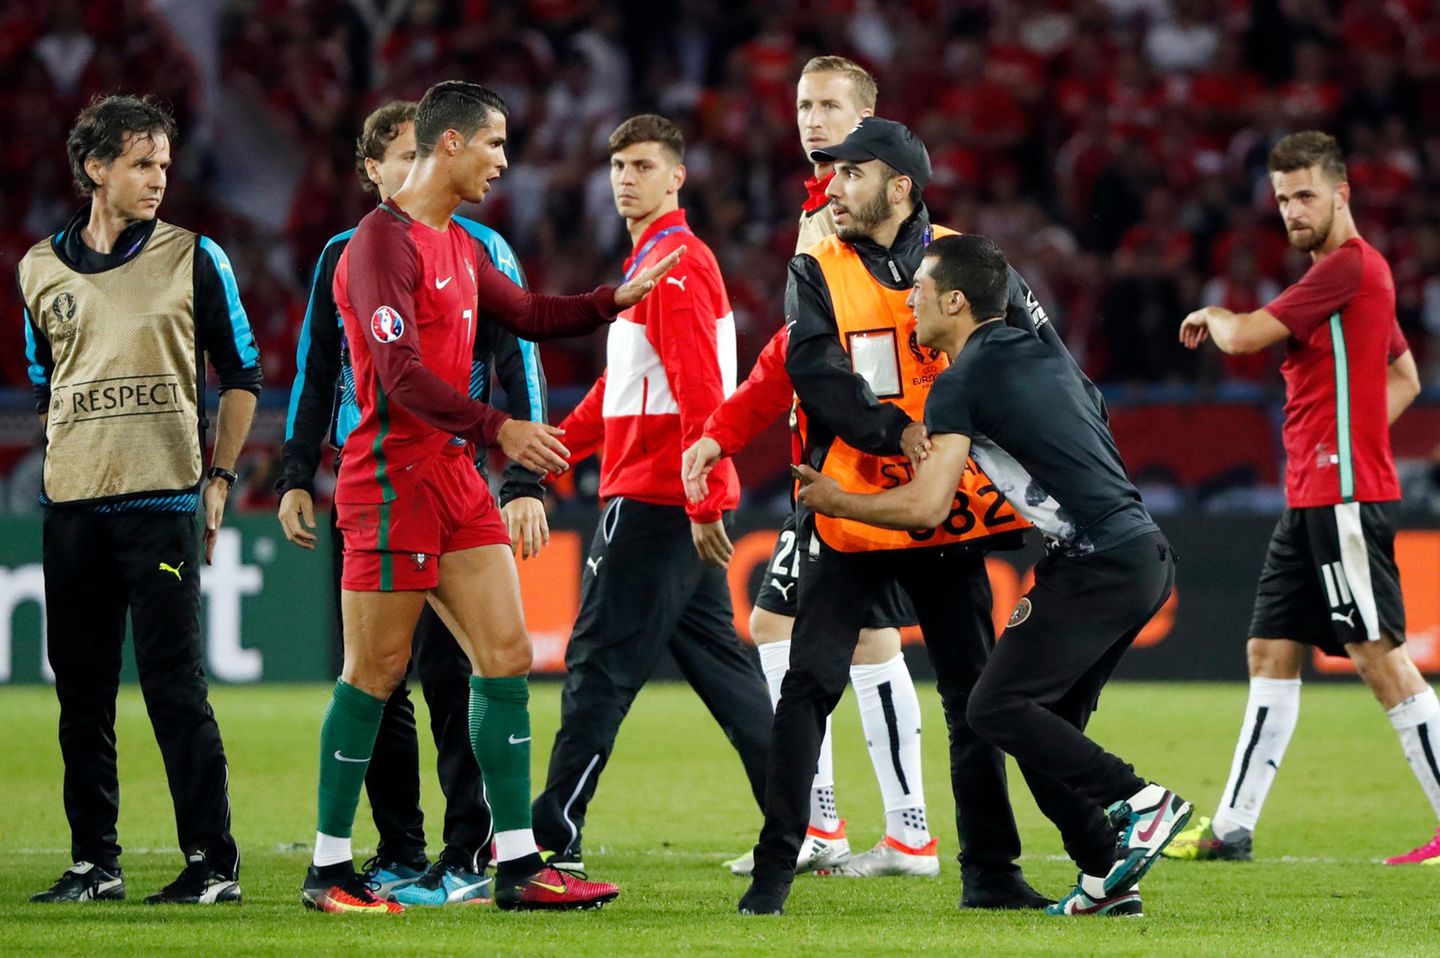 Als ein Fan auf das Spielfeld stürmt hält Cristiano Ronaldo die Ordner auf und macht noch schnell ein Selfie mit dem Flitzer.